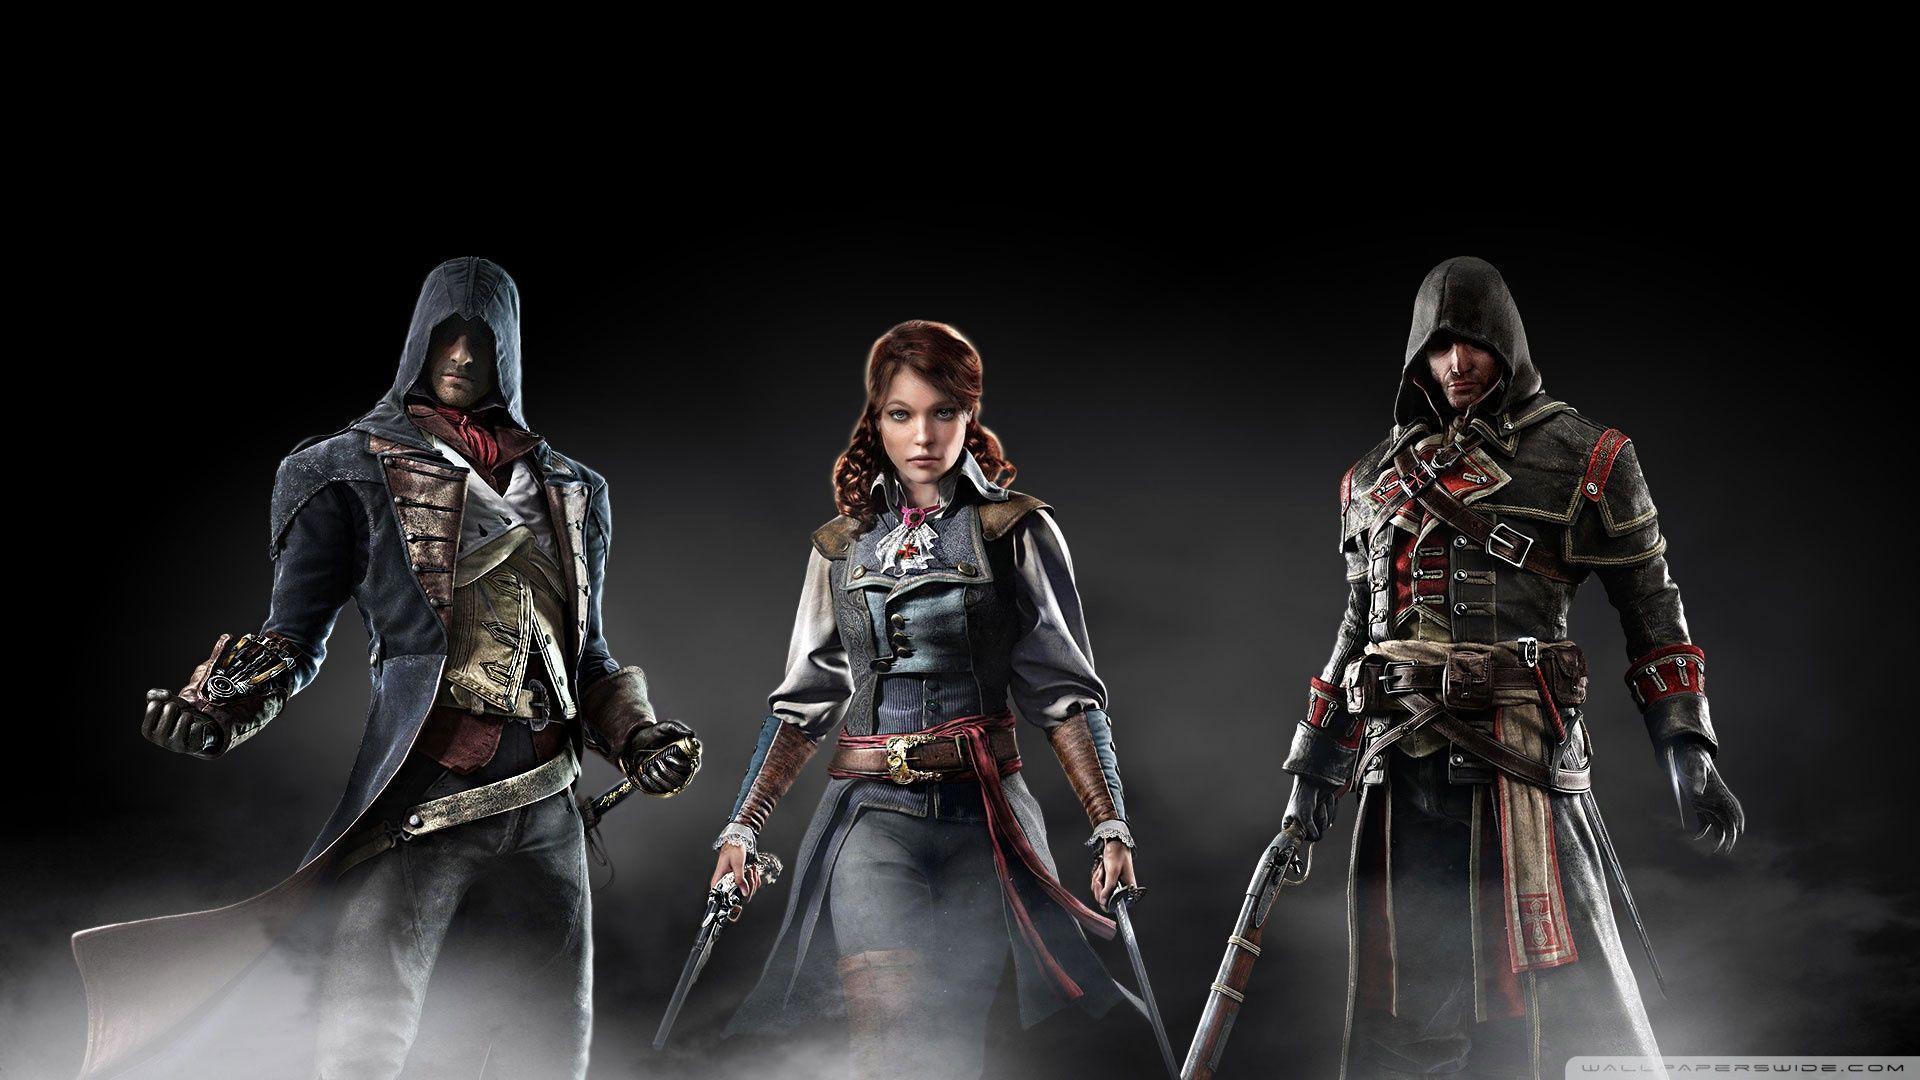 Assassins Creed Unity vs Rogue HD desktop wallpaper, Widescreen